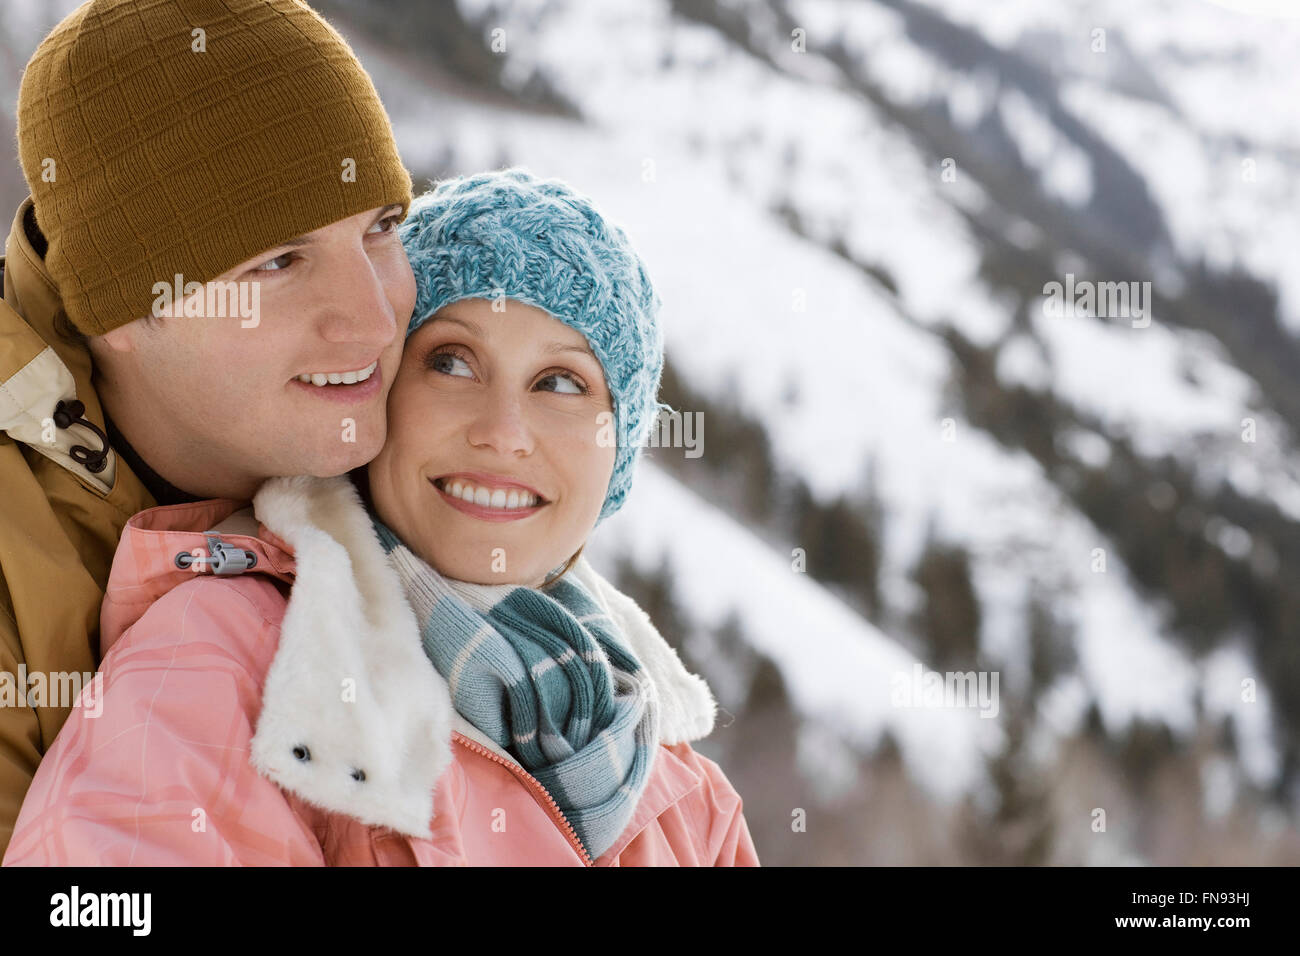 Un autre couple, homme et femme, dans les montagnes enneigées. Banque D'Images